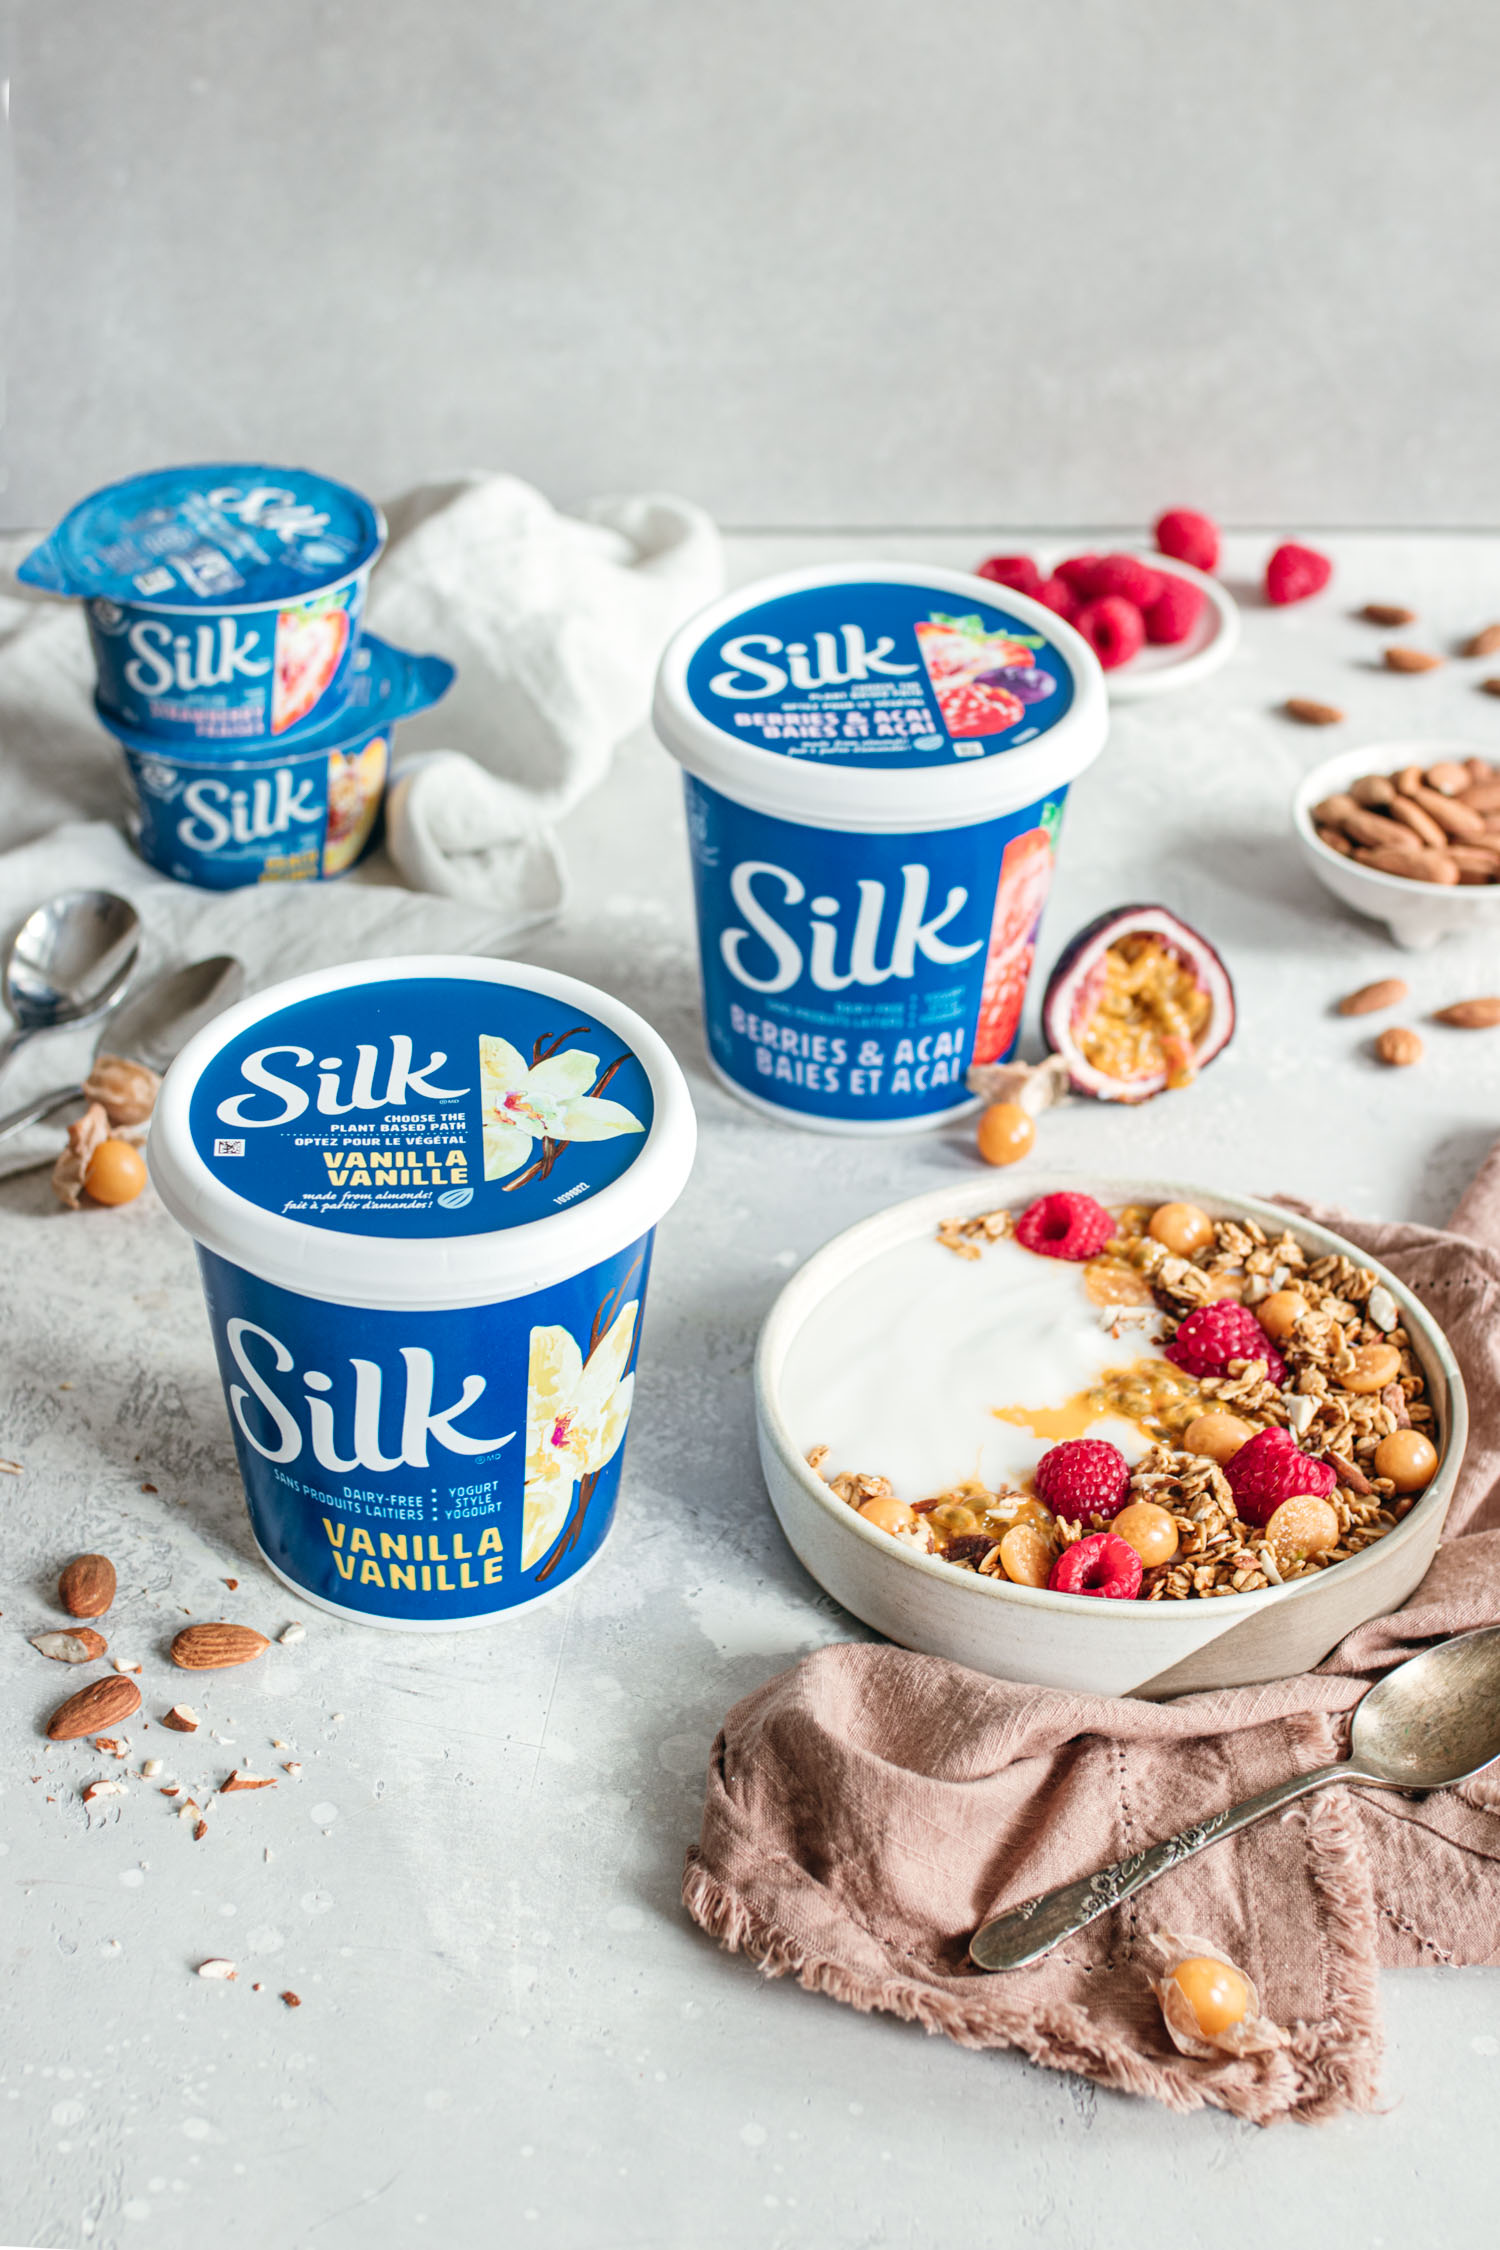 Silk yogurt surrounded by fruits, a yogurt bowl and granola